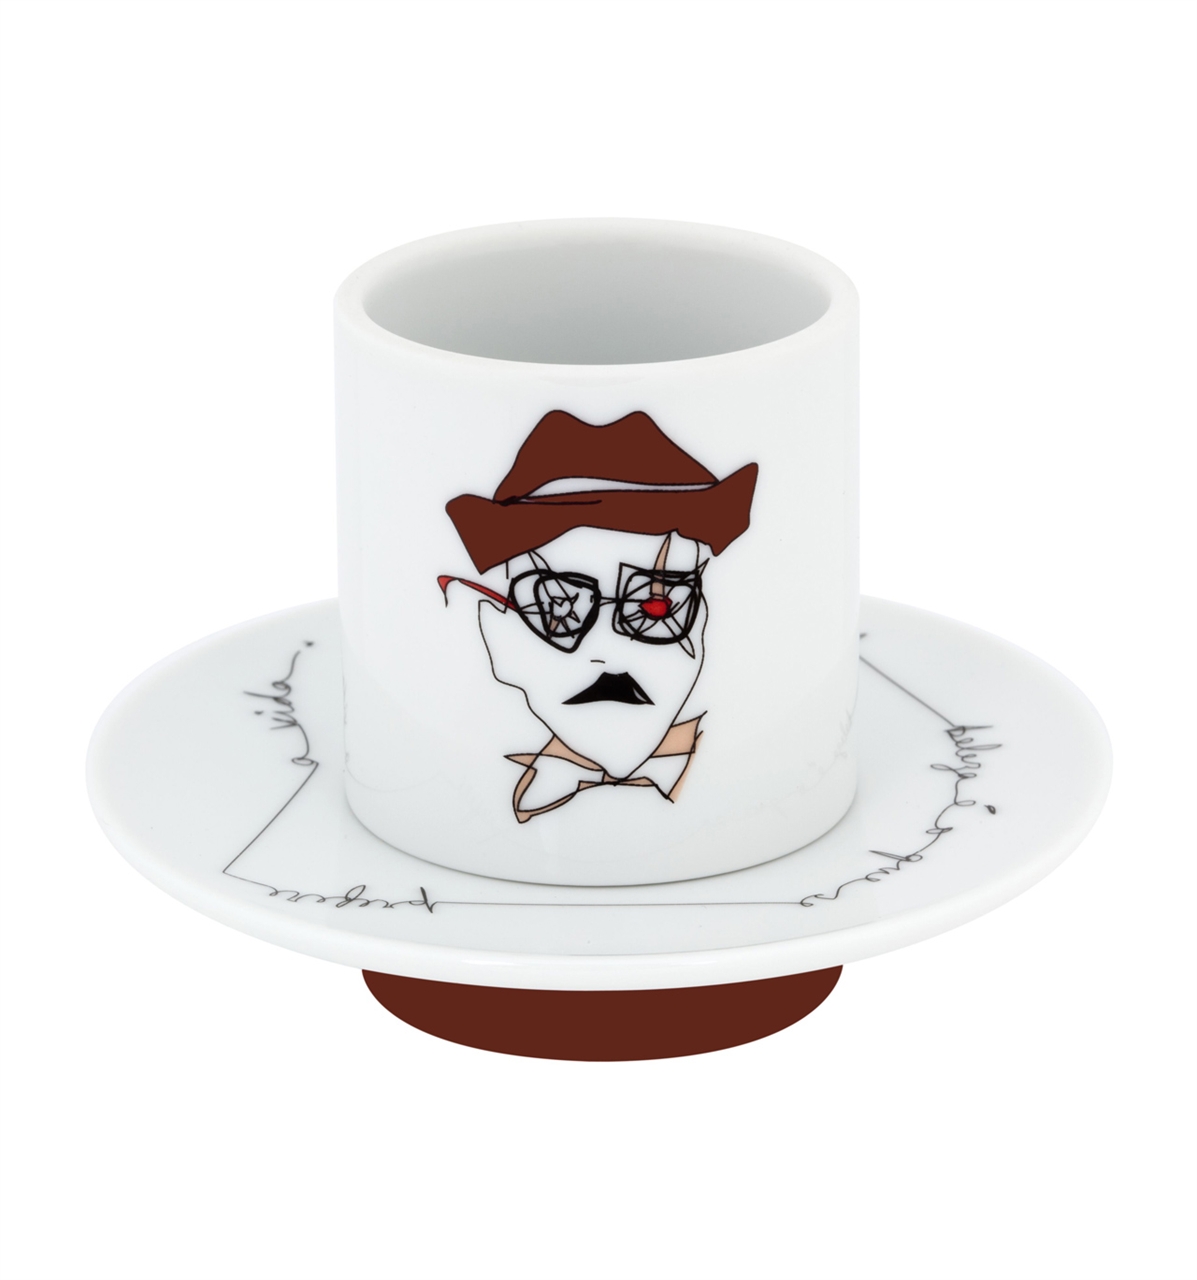 vista-alegre-collection-heteronimos-coffee-cup1-saucer